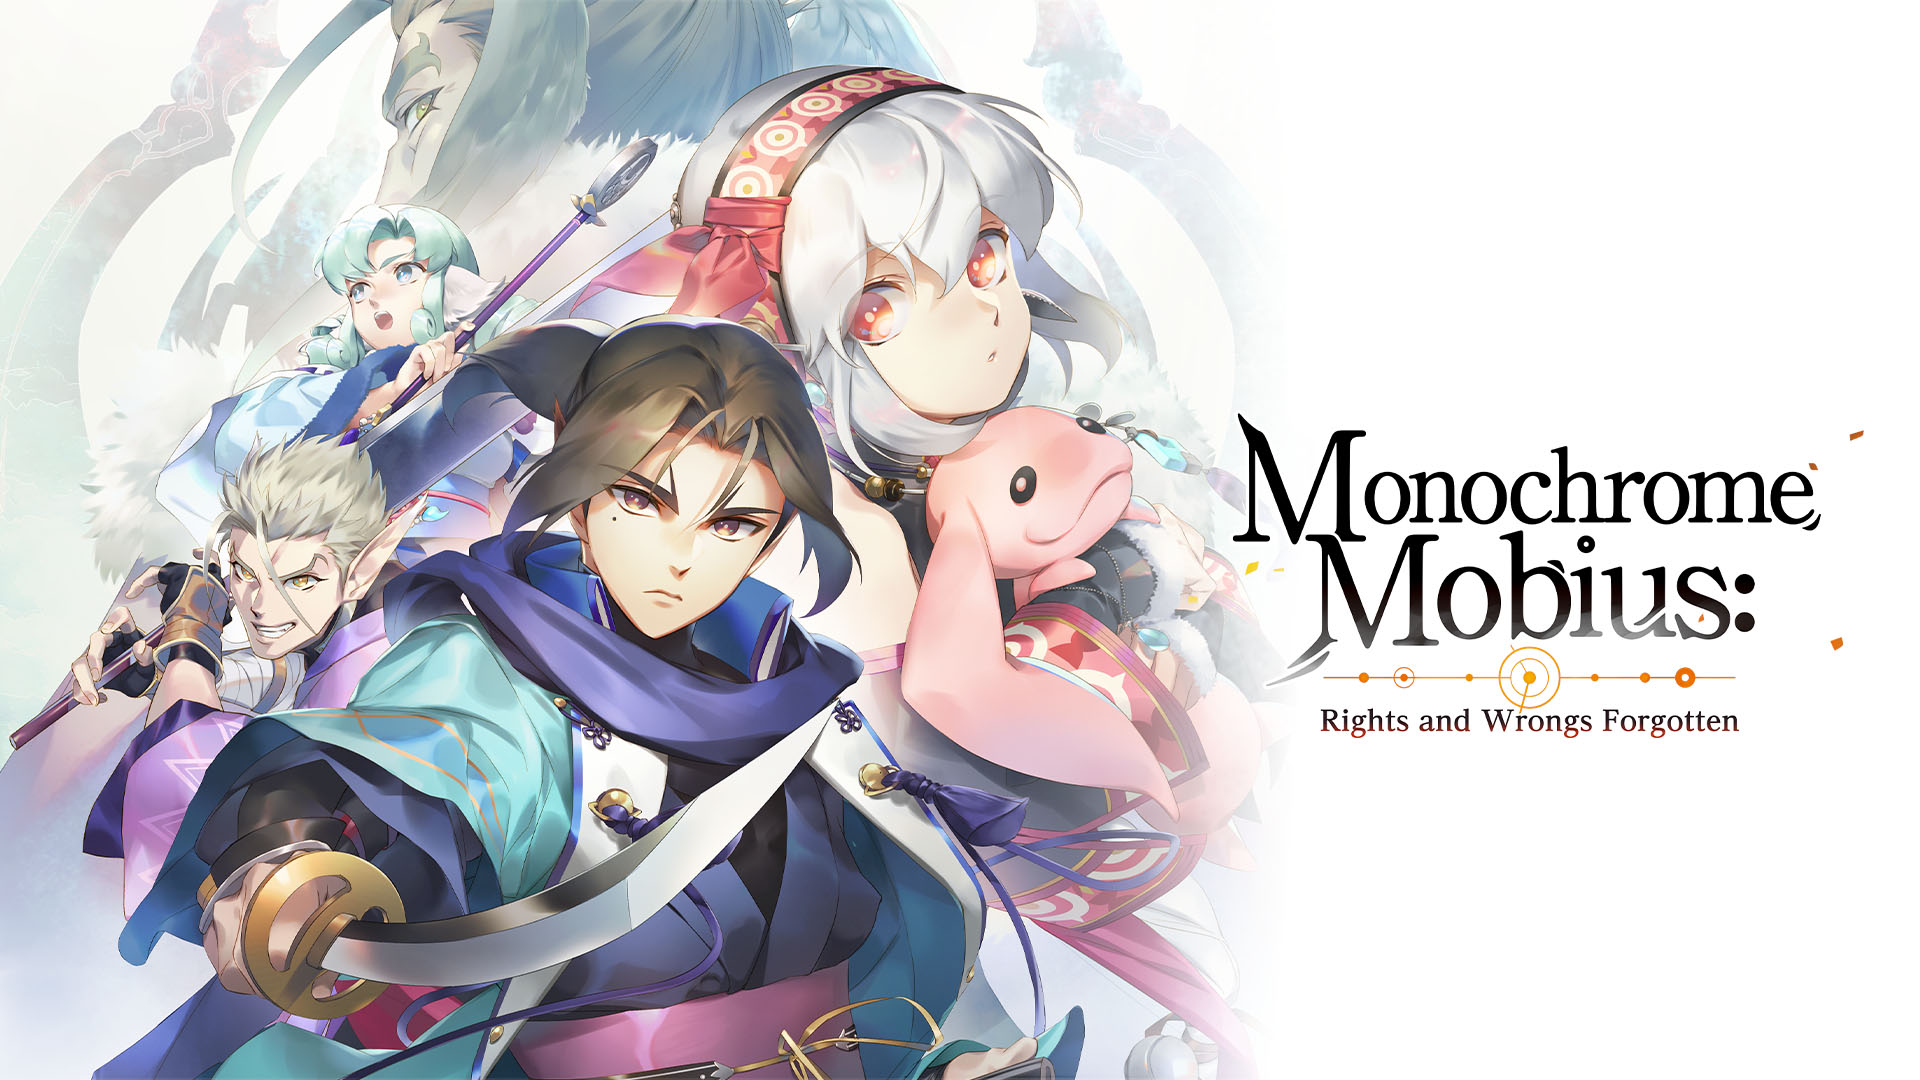 Monochrome Mobius : Rights and Wrongs Forgotten sort le 8 septembre sur PS5 et PS4 au Japon, et sur PC dans le monde entier